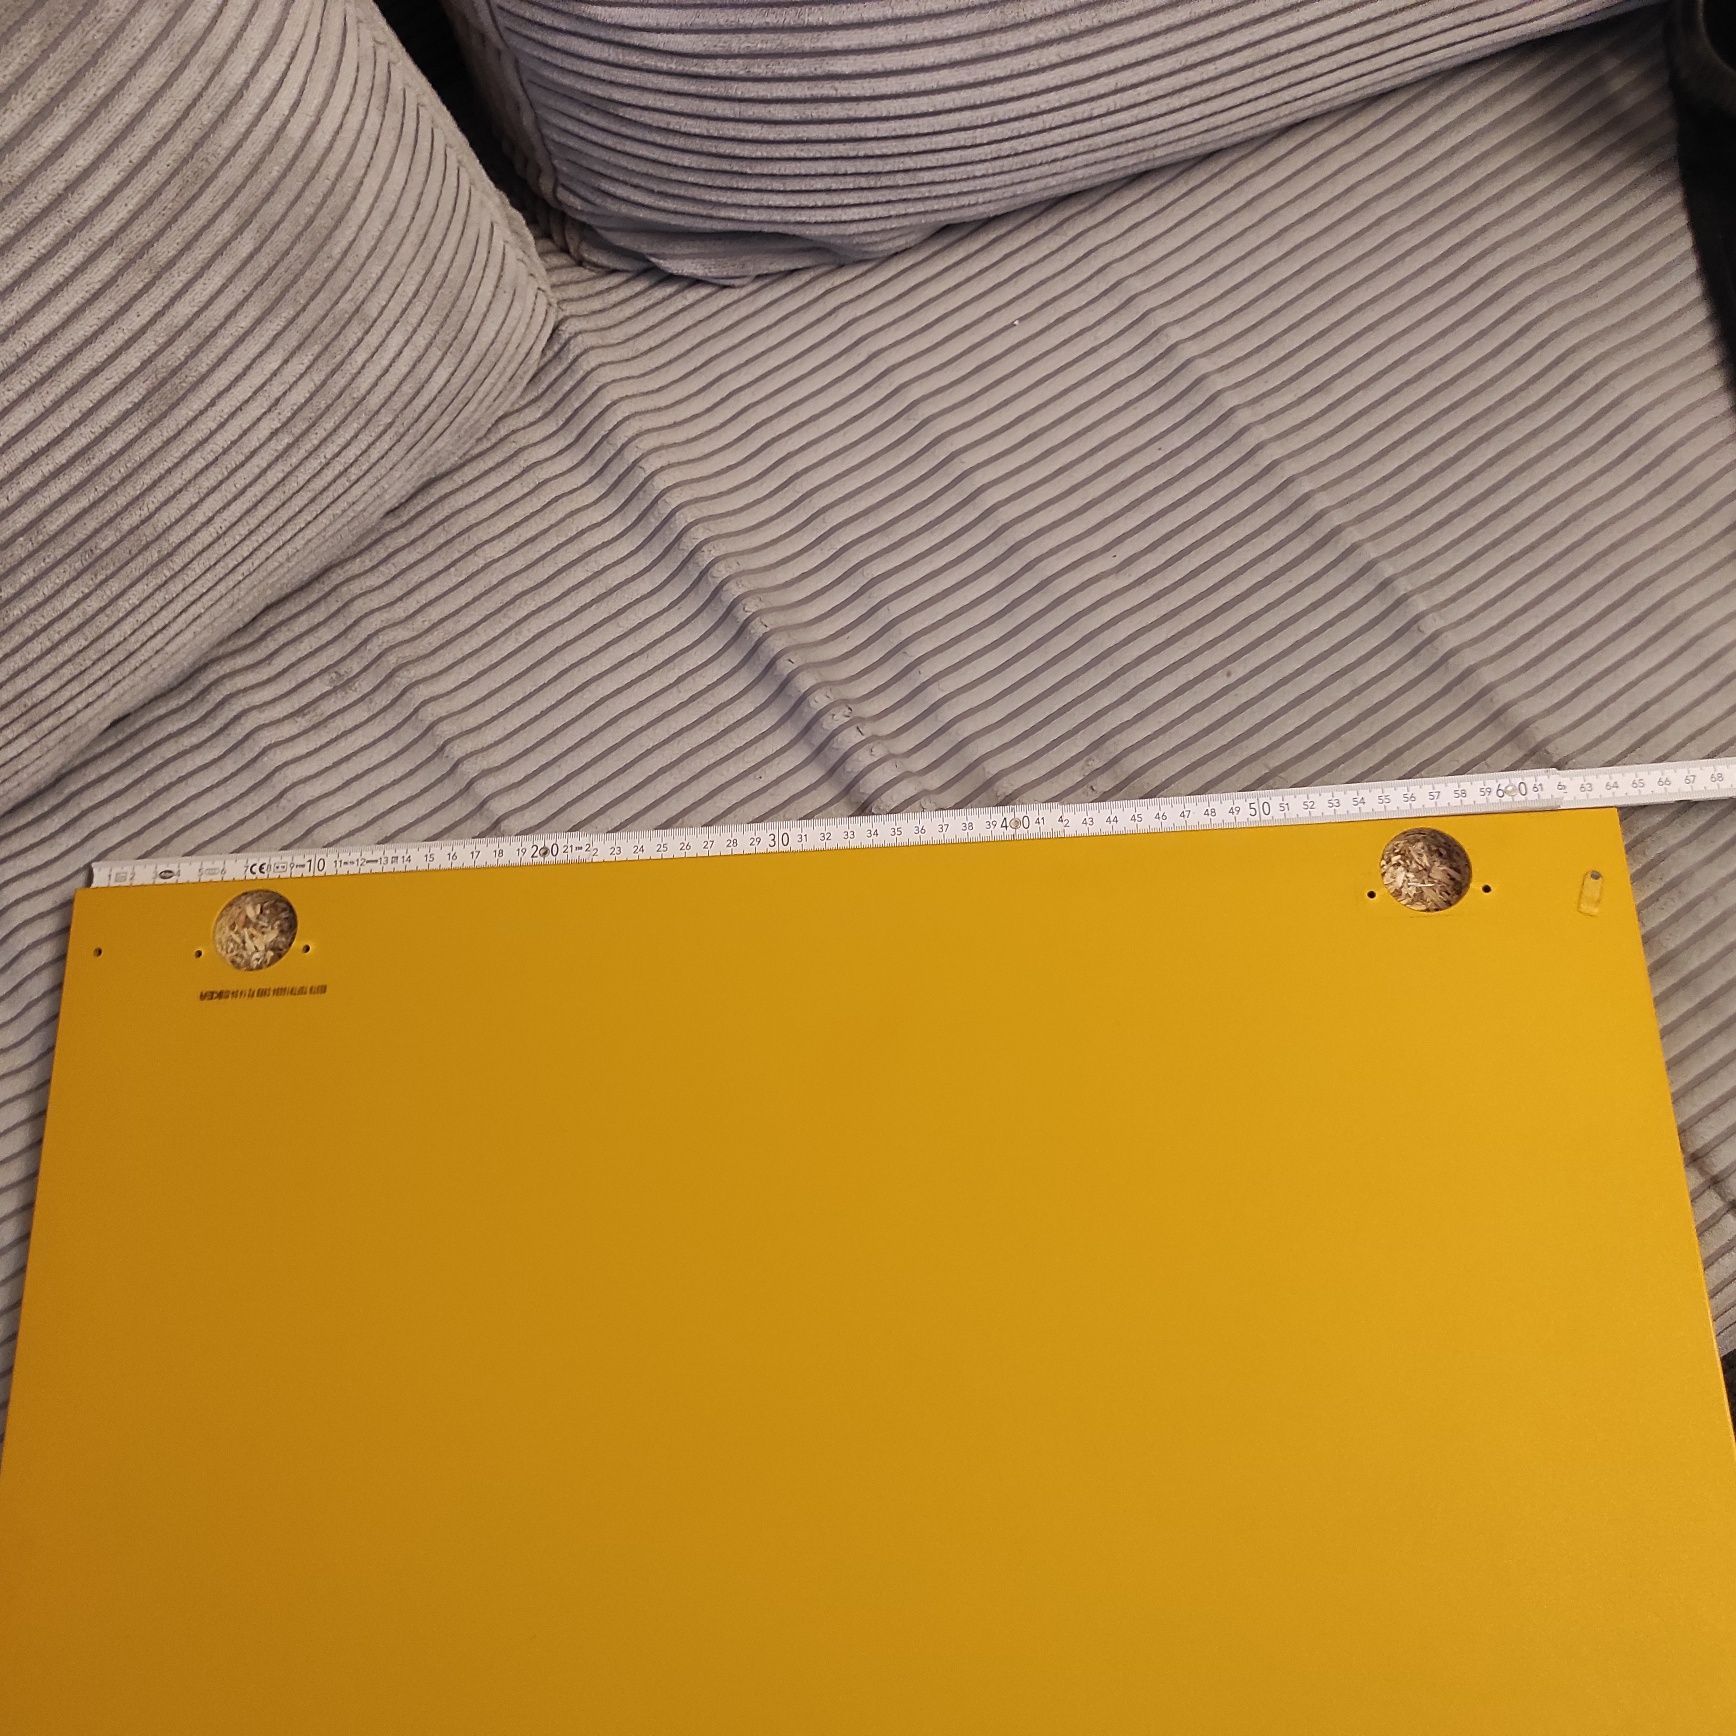 Ikea Besta front lakierowany żółty wysoki połysk  60x64